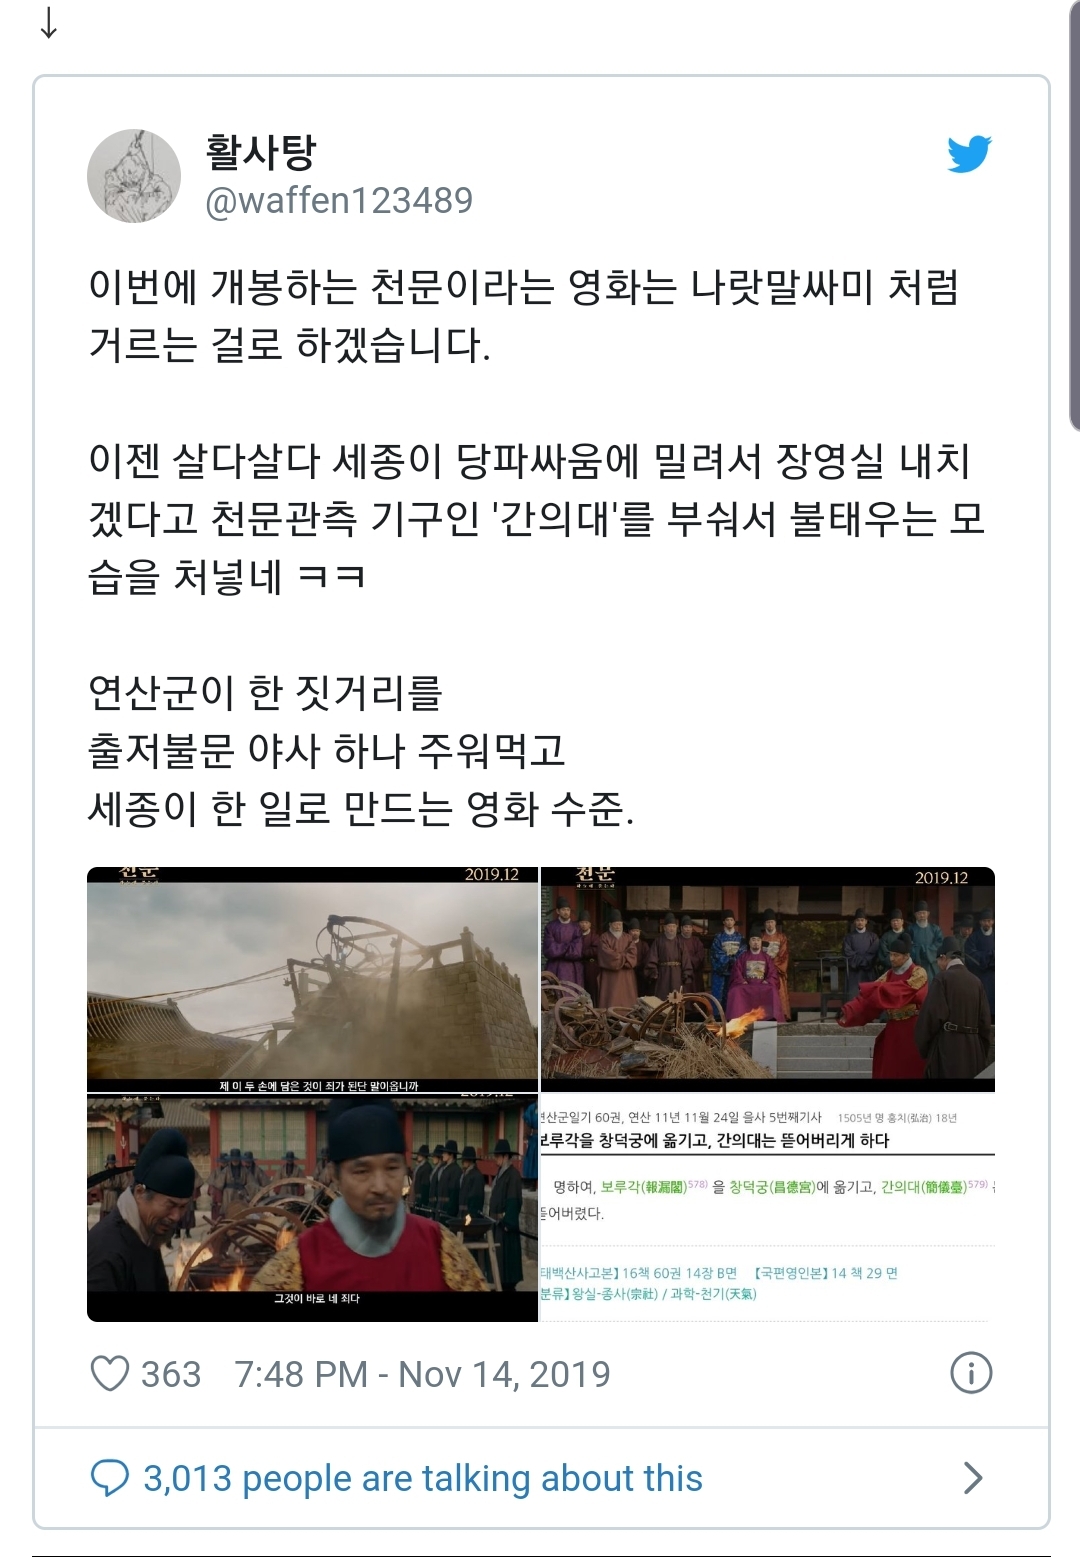 개봉예정 영화 '천문' 세종대왕 역사왜곡 논란